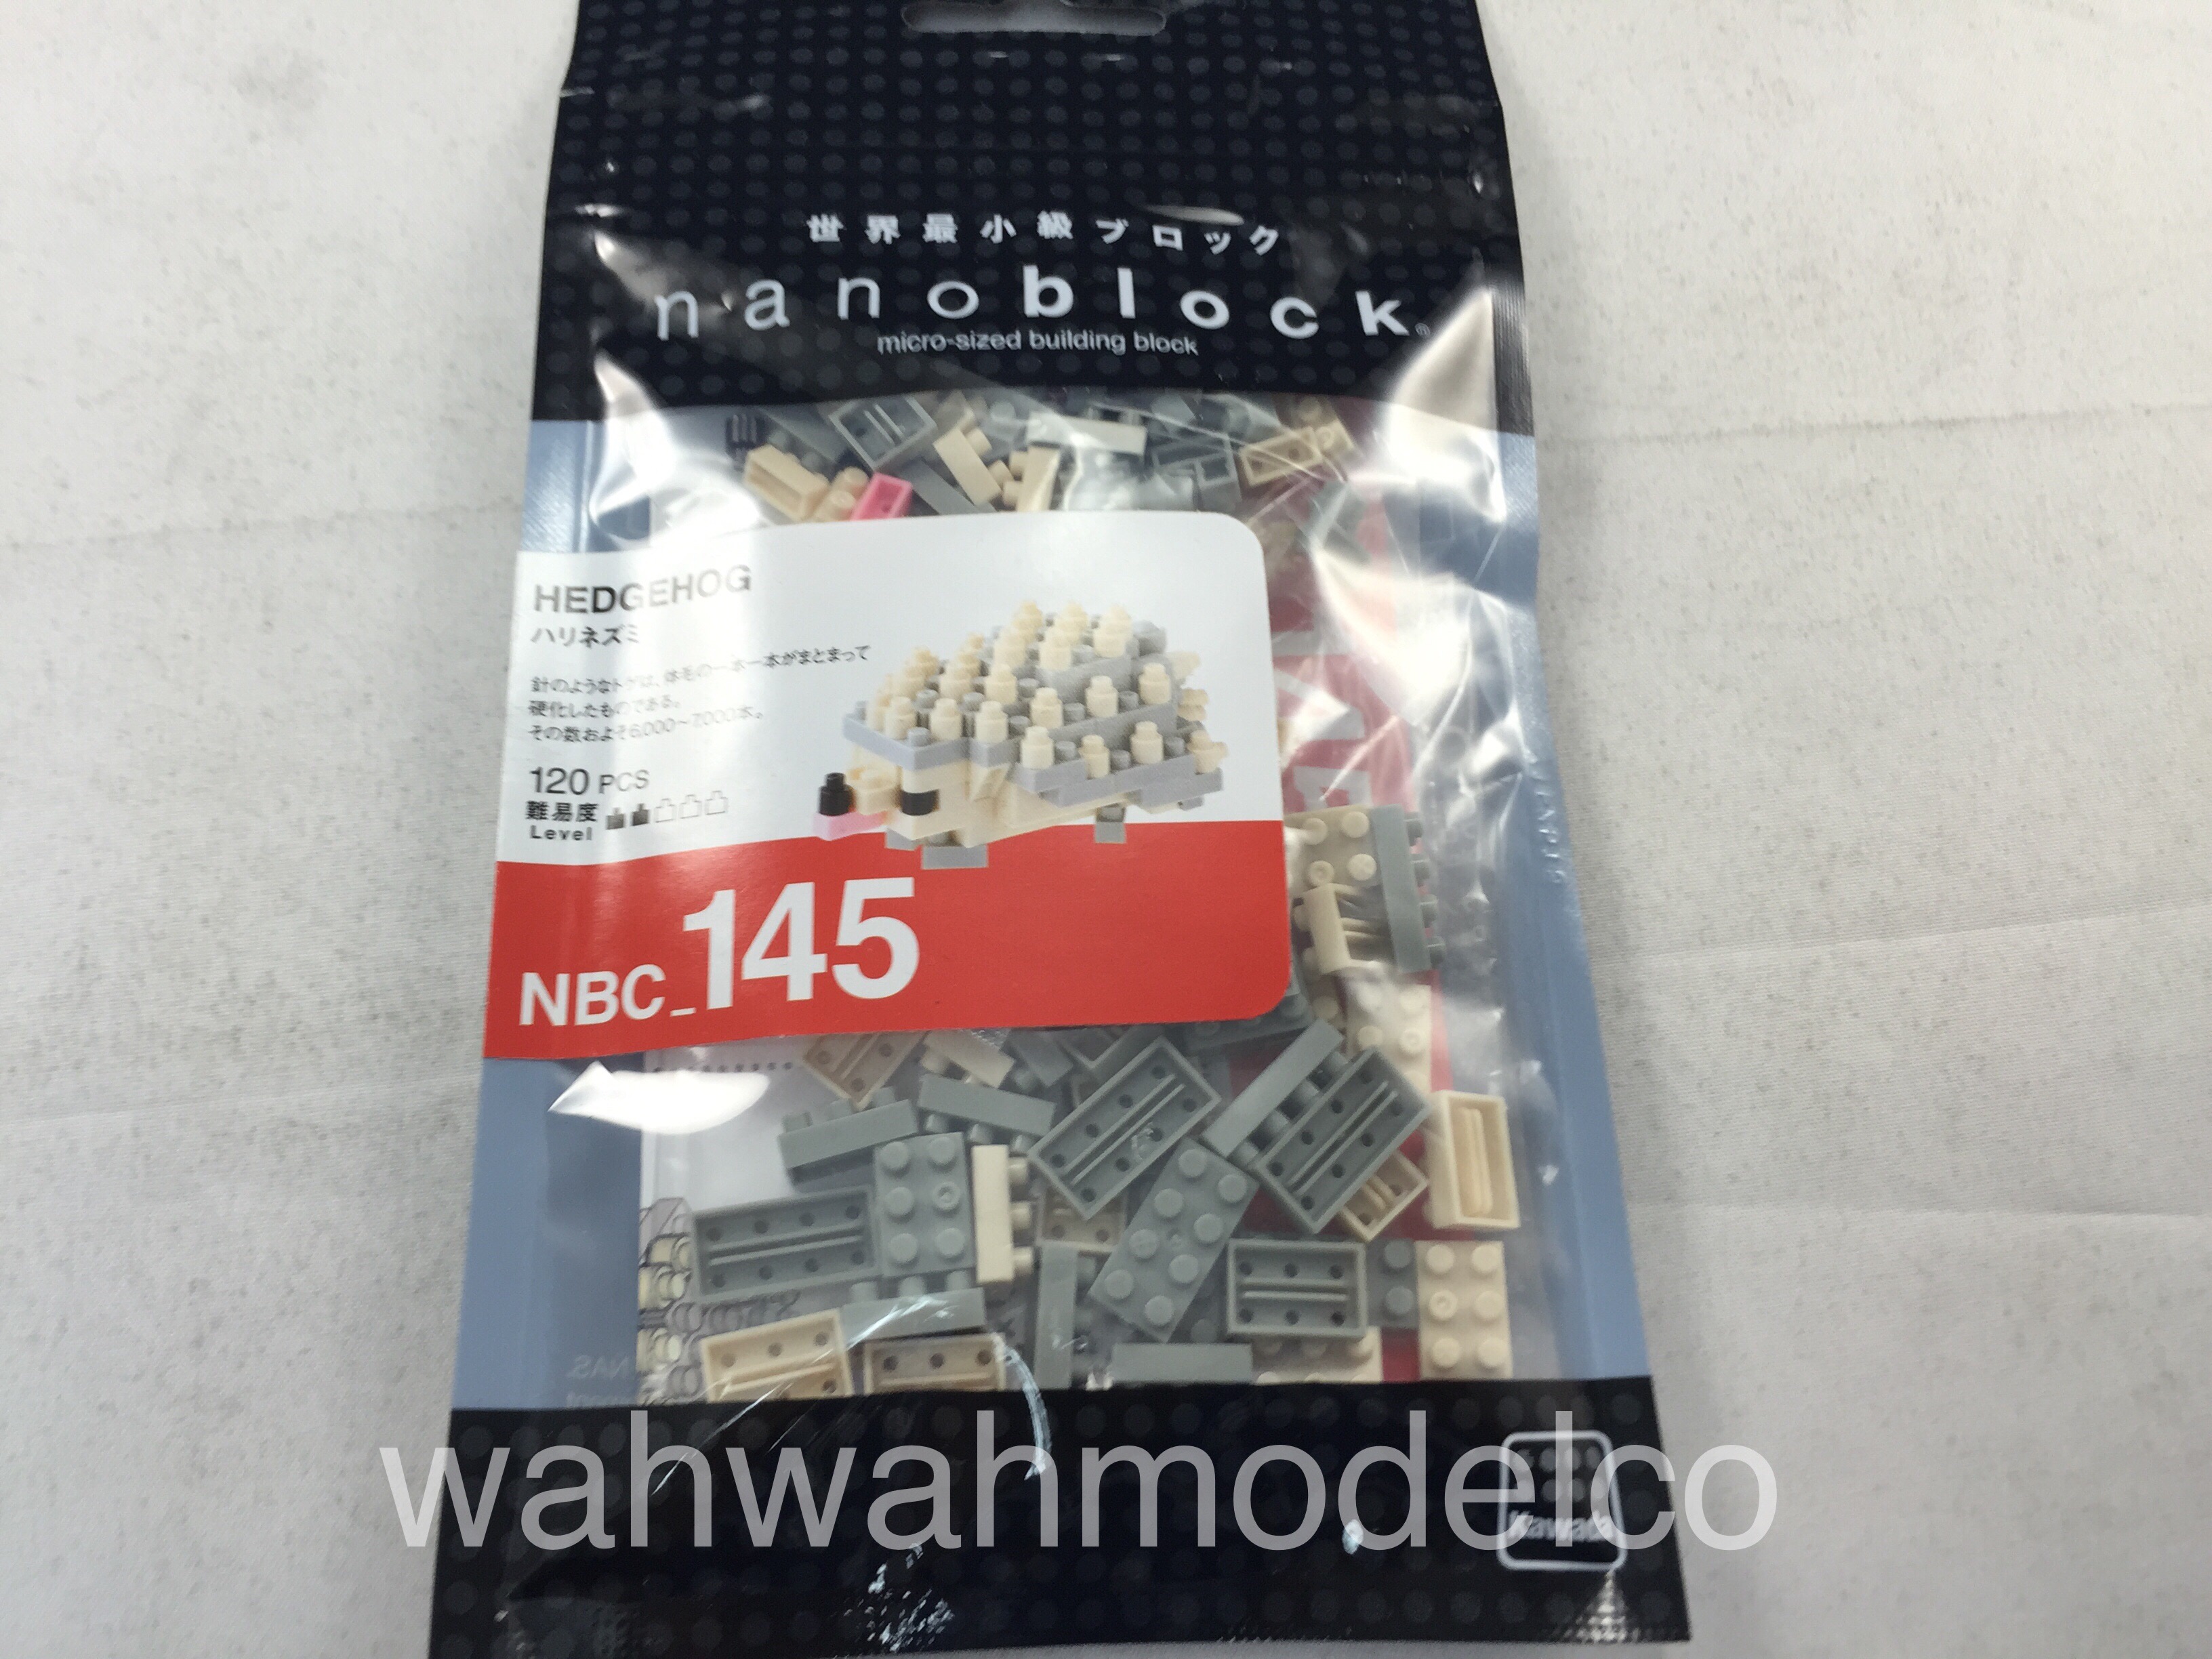 Nanoblock Hedgehog Kawada Nano blocks  NBC-145 120 pieces pcs 